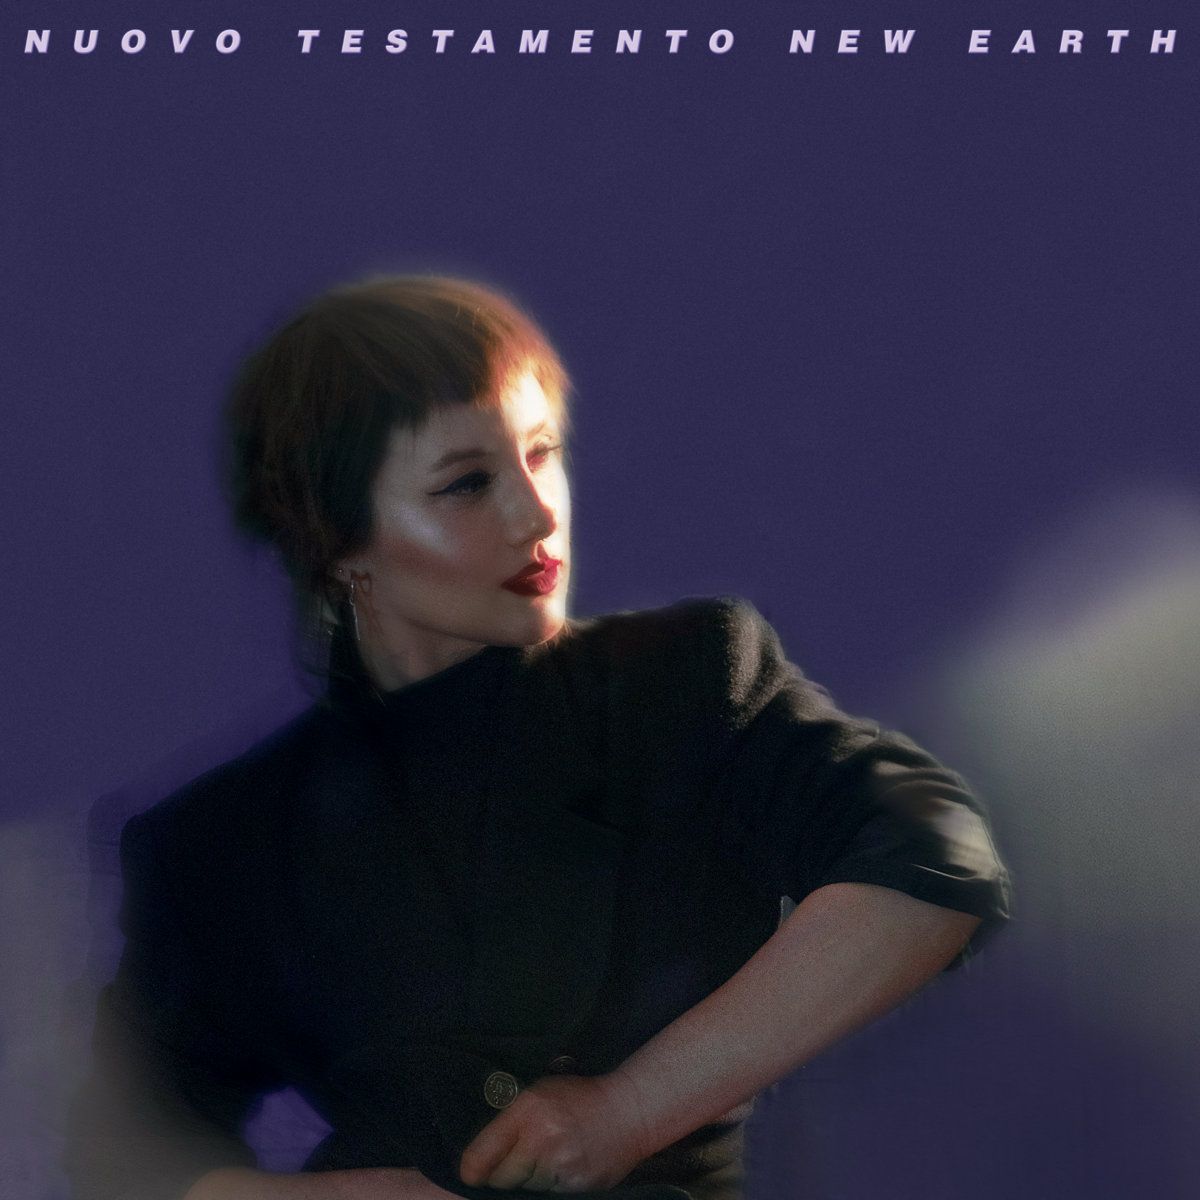 NUOVO TESTAMENTO / NEW EARTH